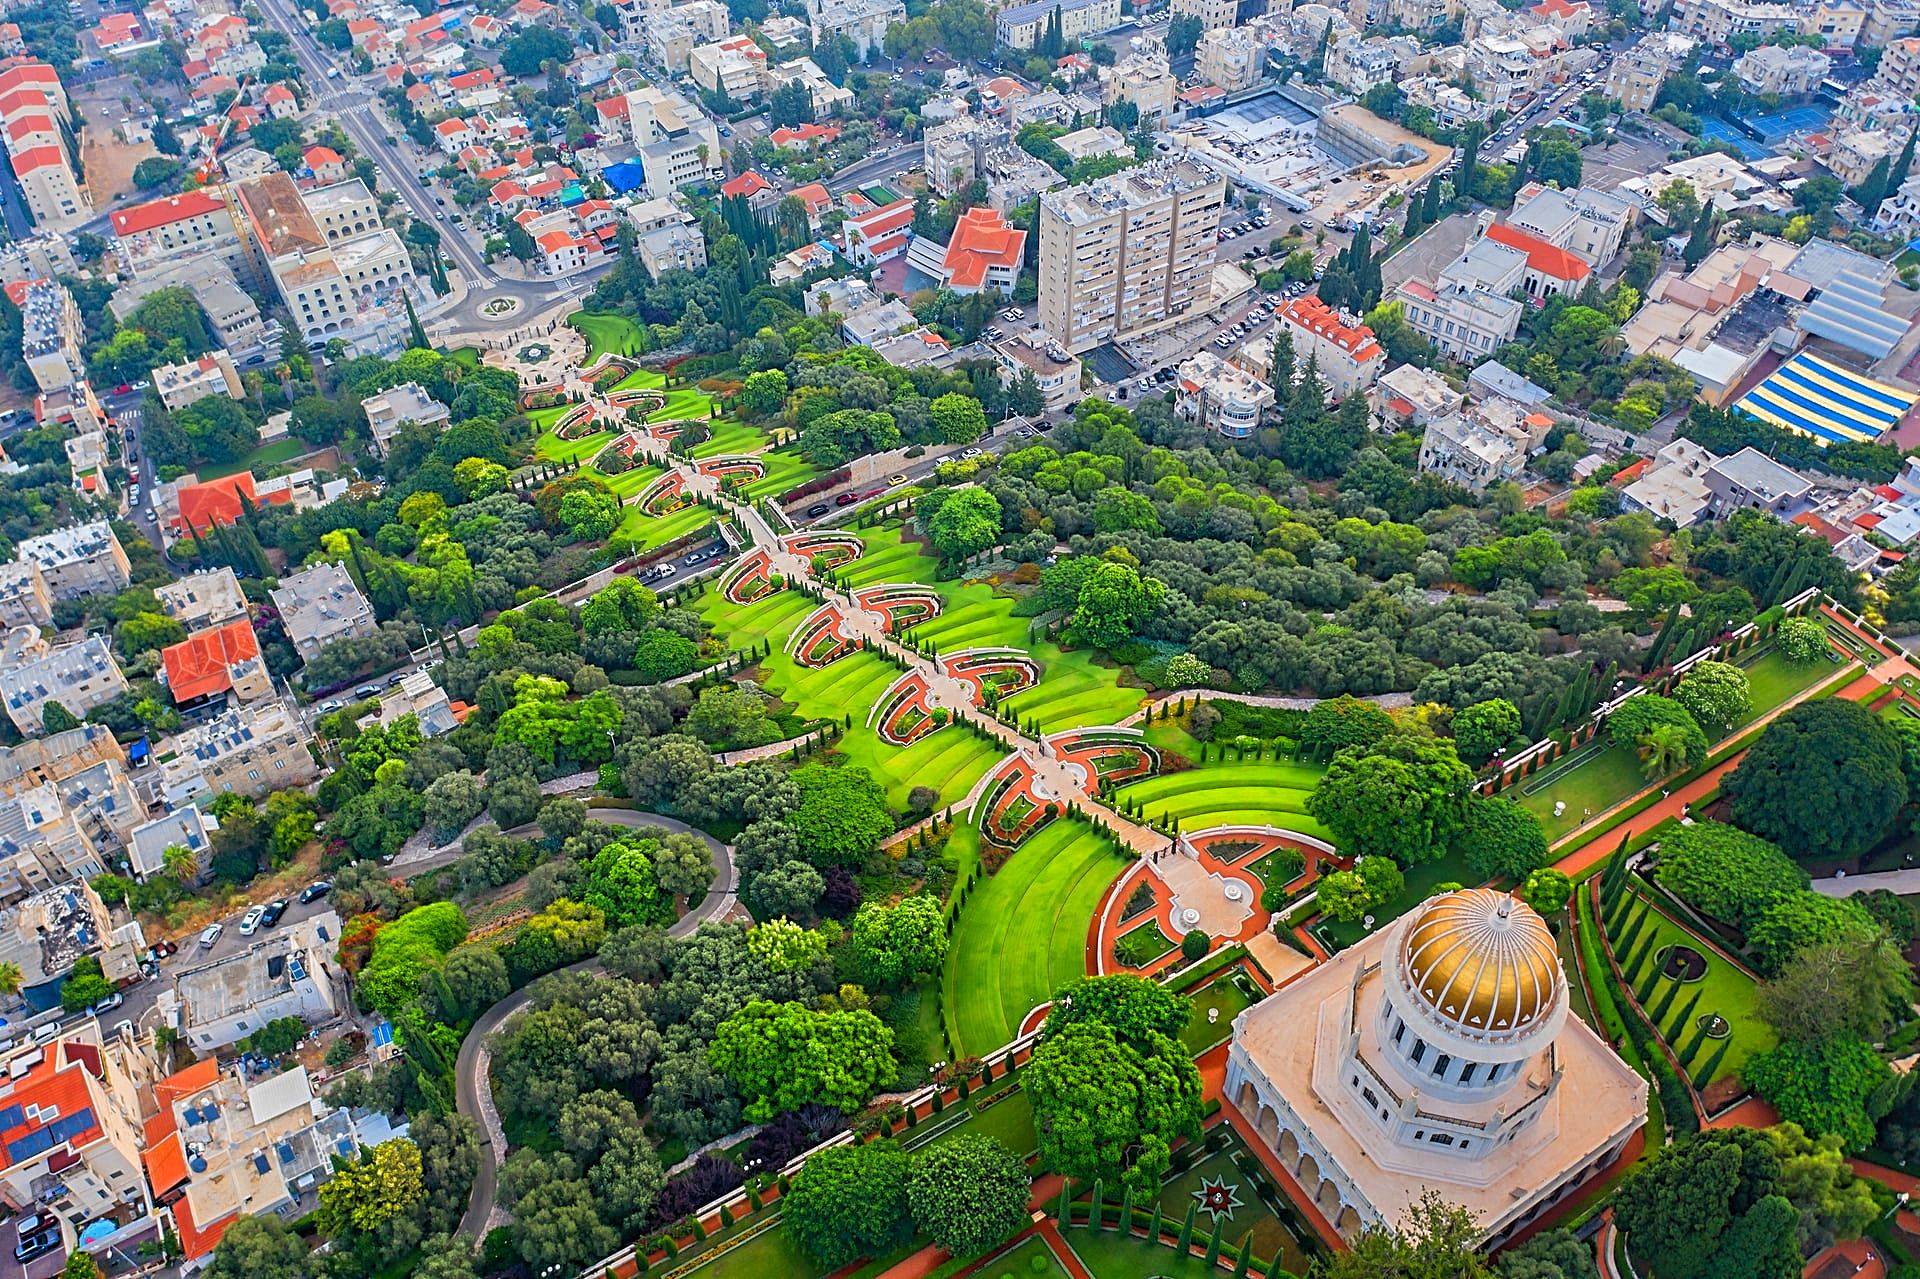 The Baha'i World Centre in Haifa, Israel